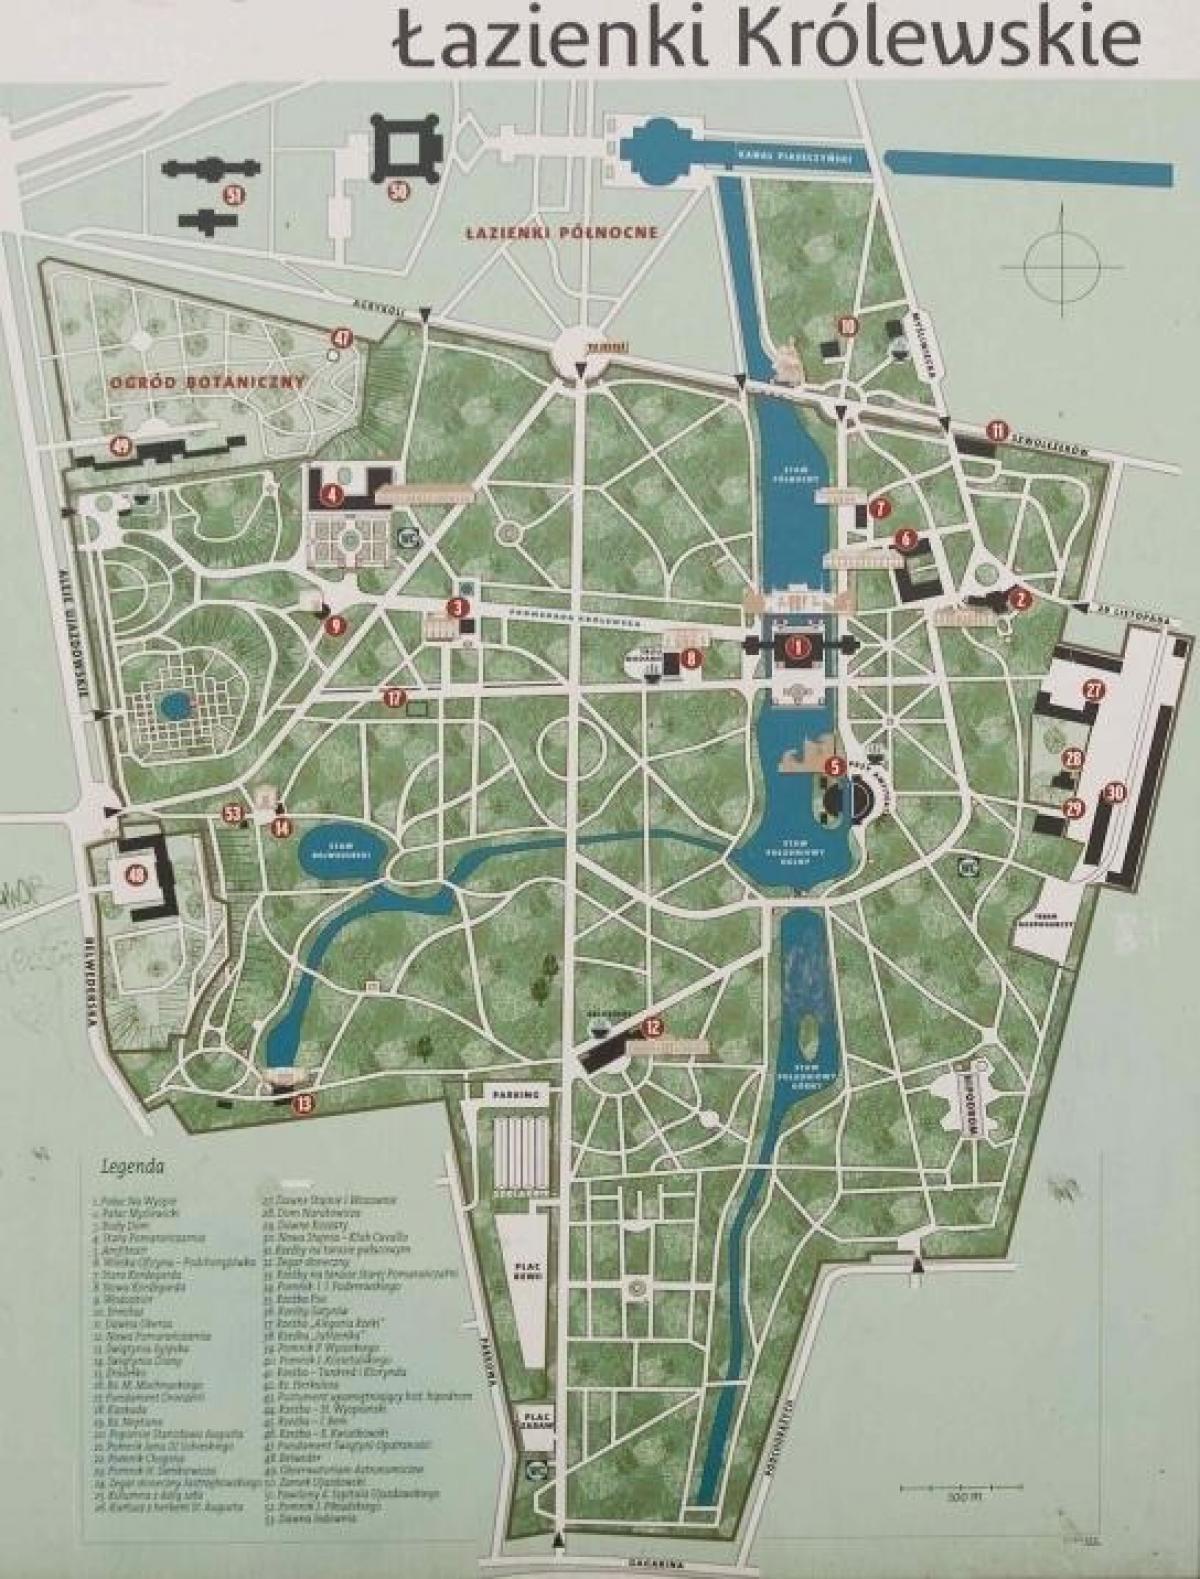 바르샤바 와지엔키 공원 맵